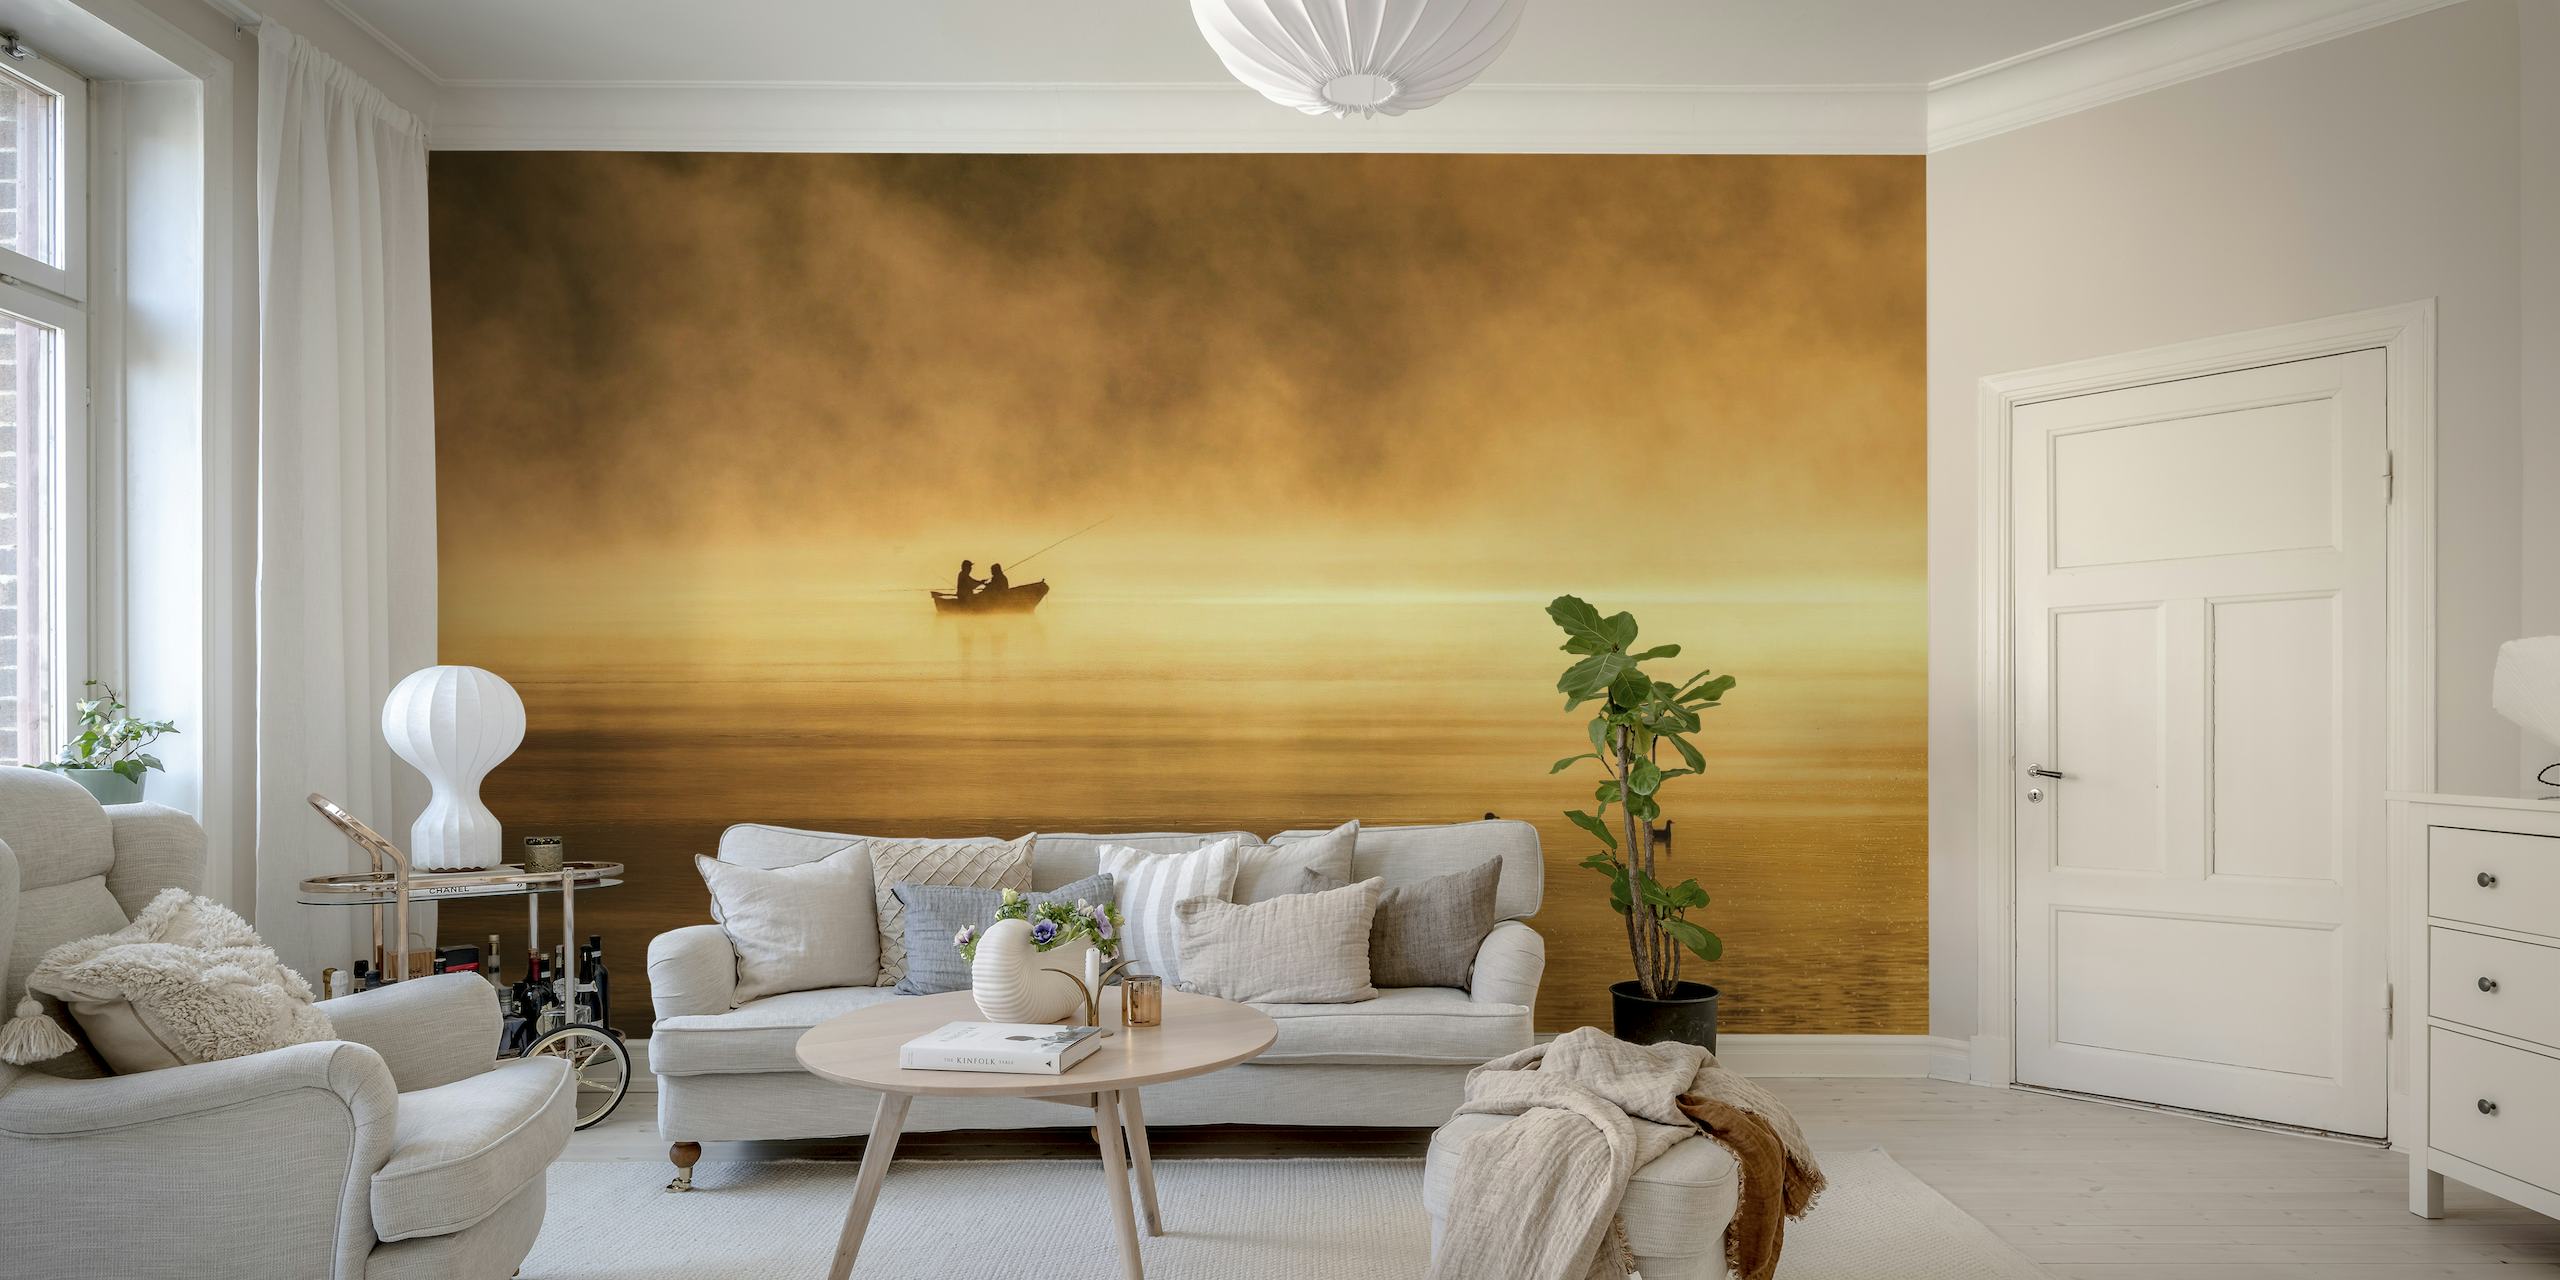 Une scène tranquille d'un bateau de pêche sur un lac brumeux au lever du soleil dans la fresque murale « Fishing for Glory ».